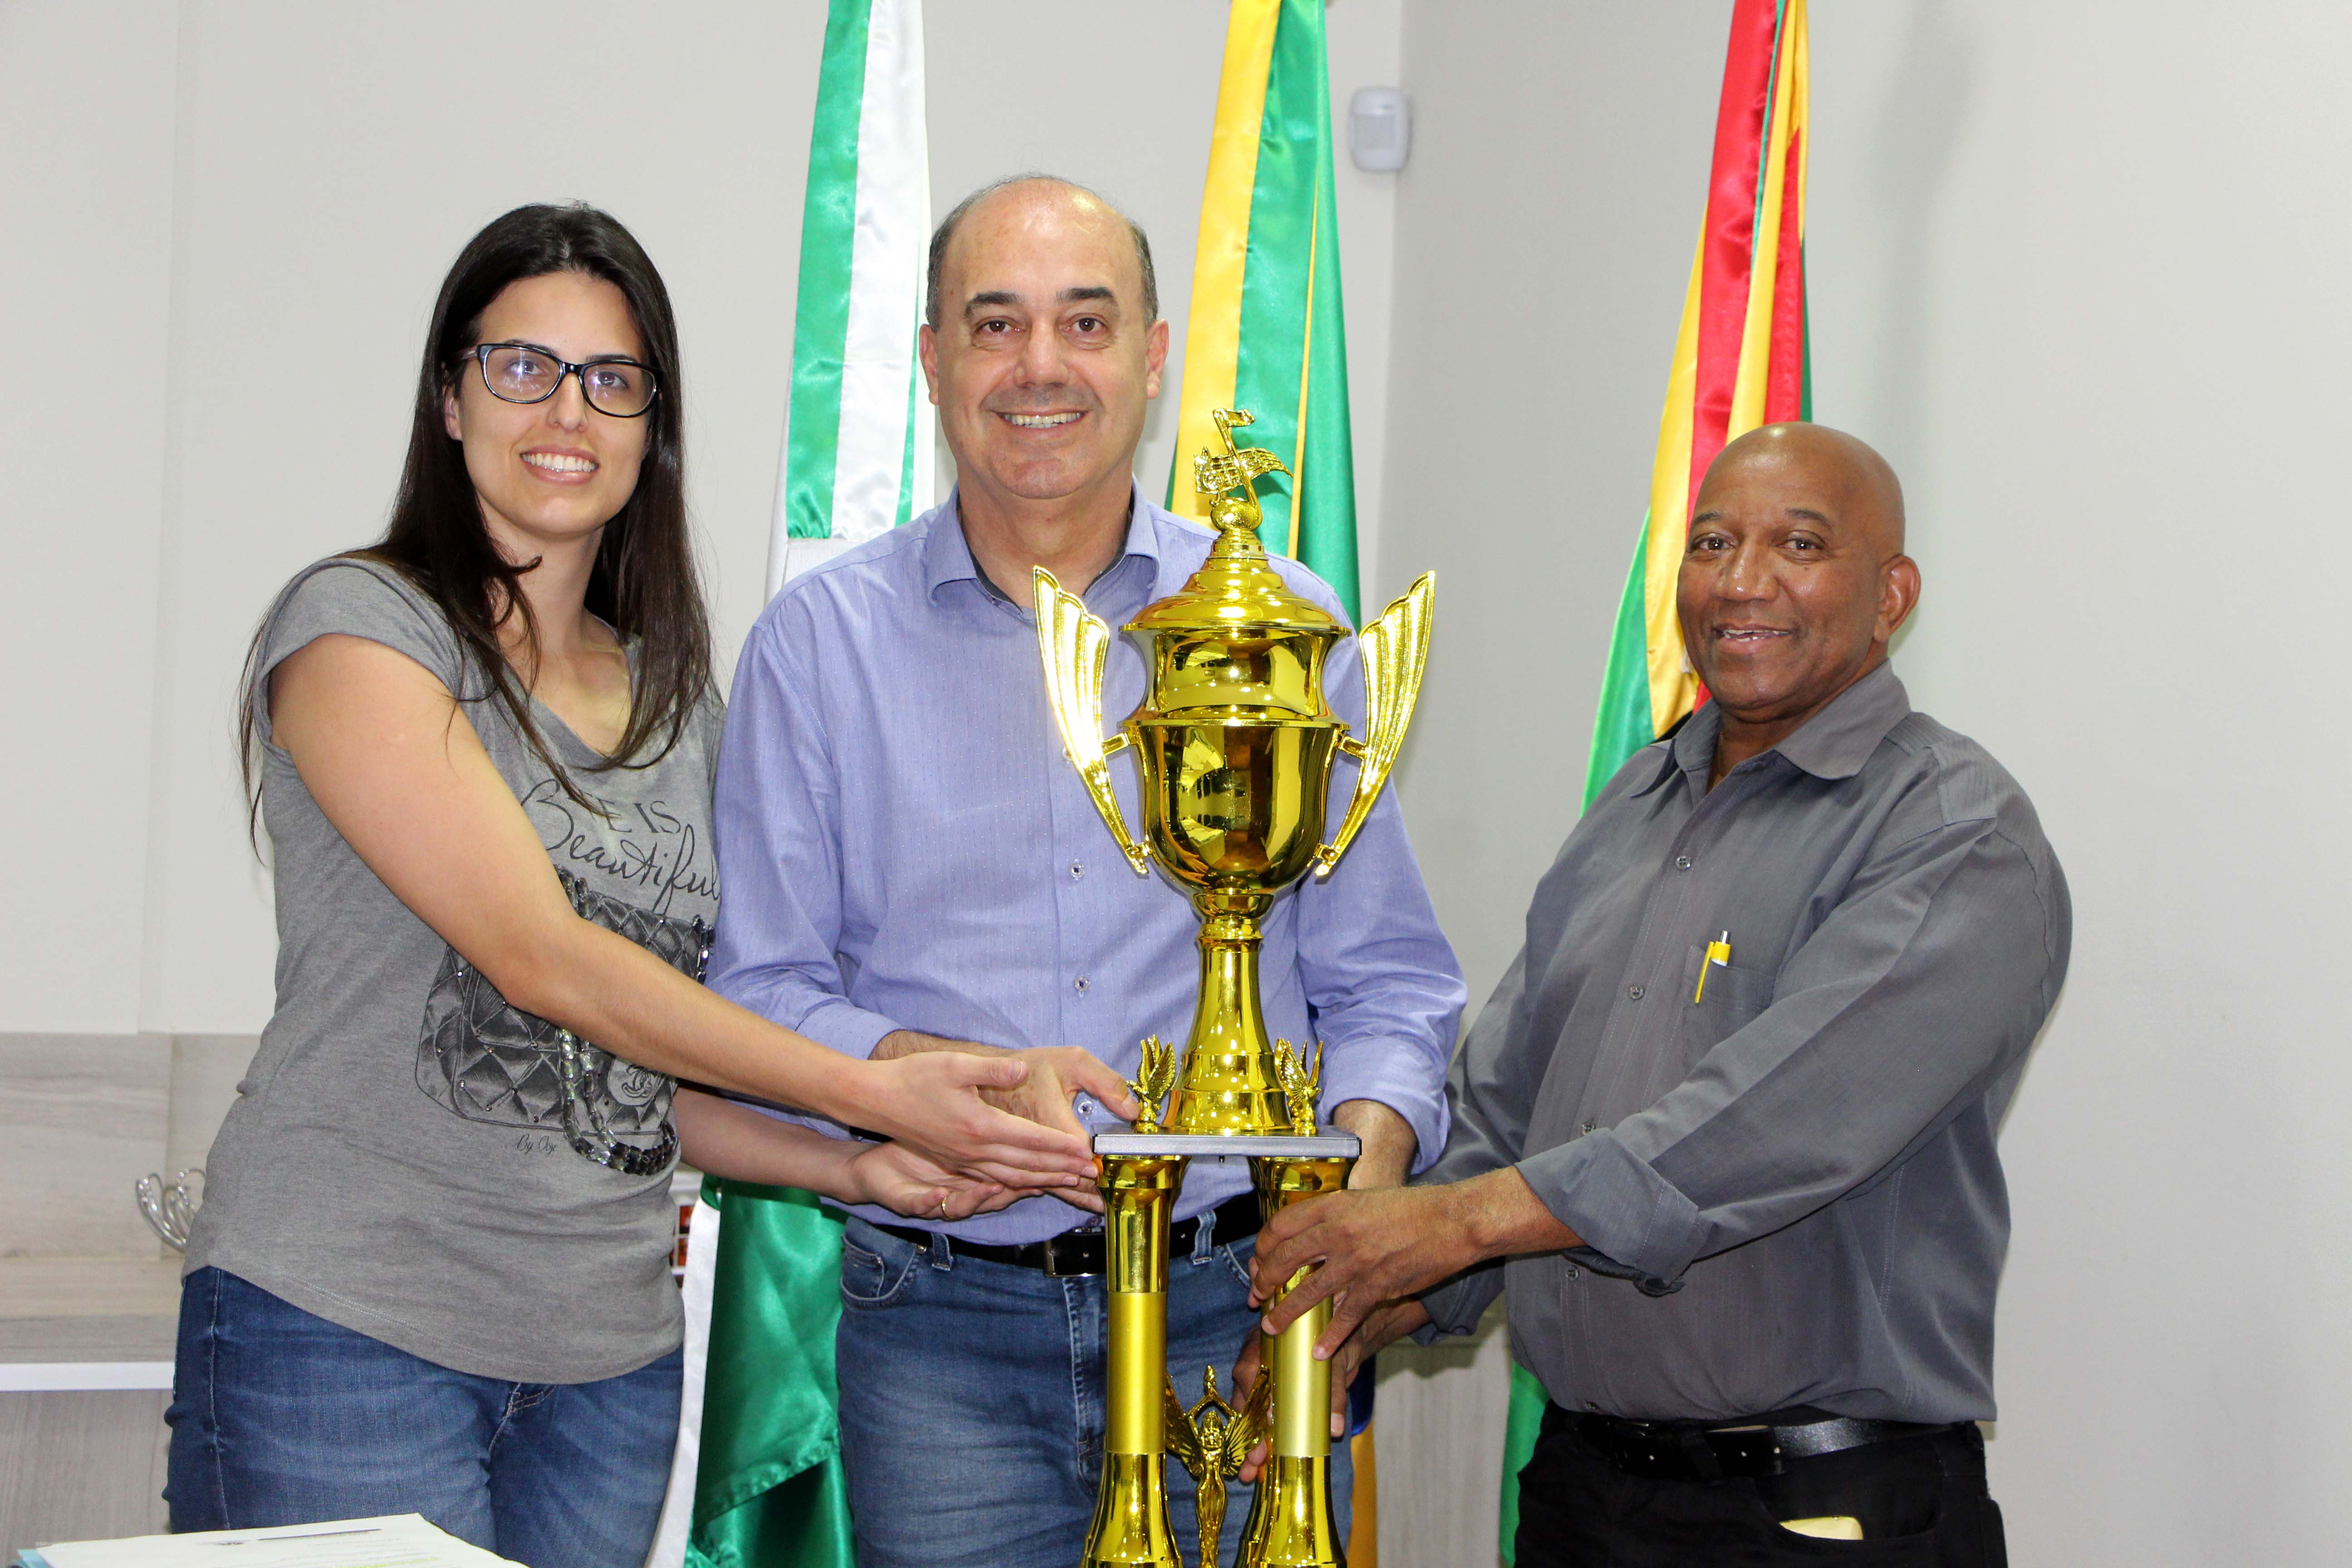 Banda de Ivaiporã conquista troféu no Festival Fanfarras e Bandas